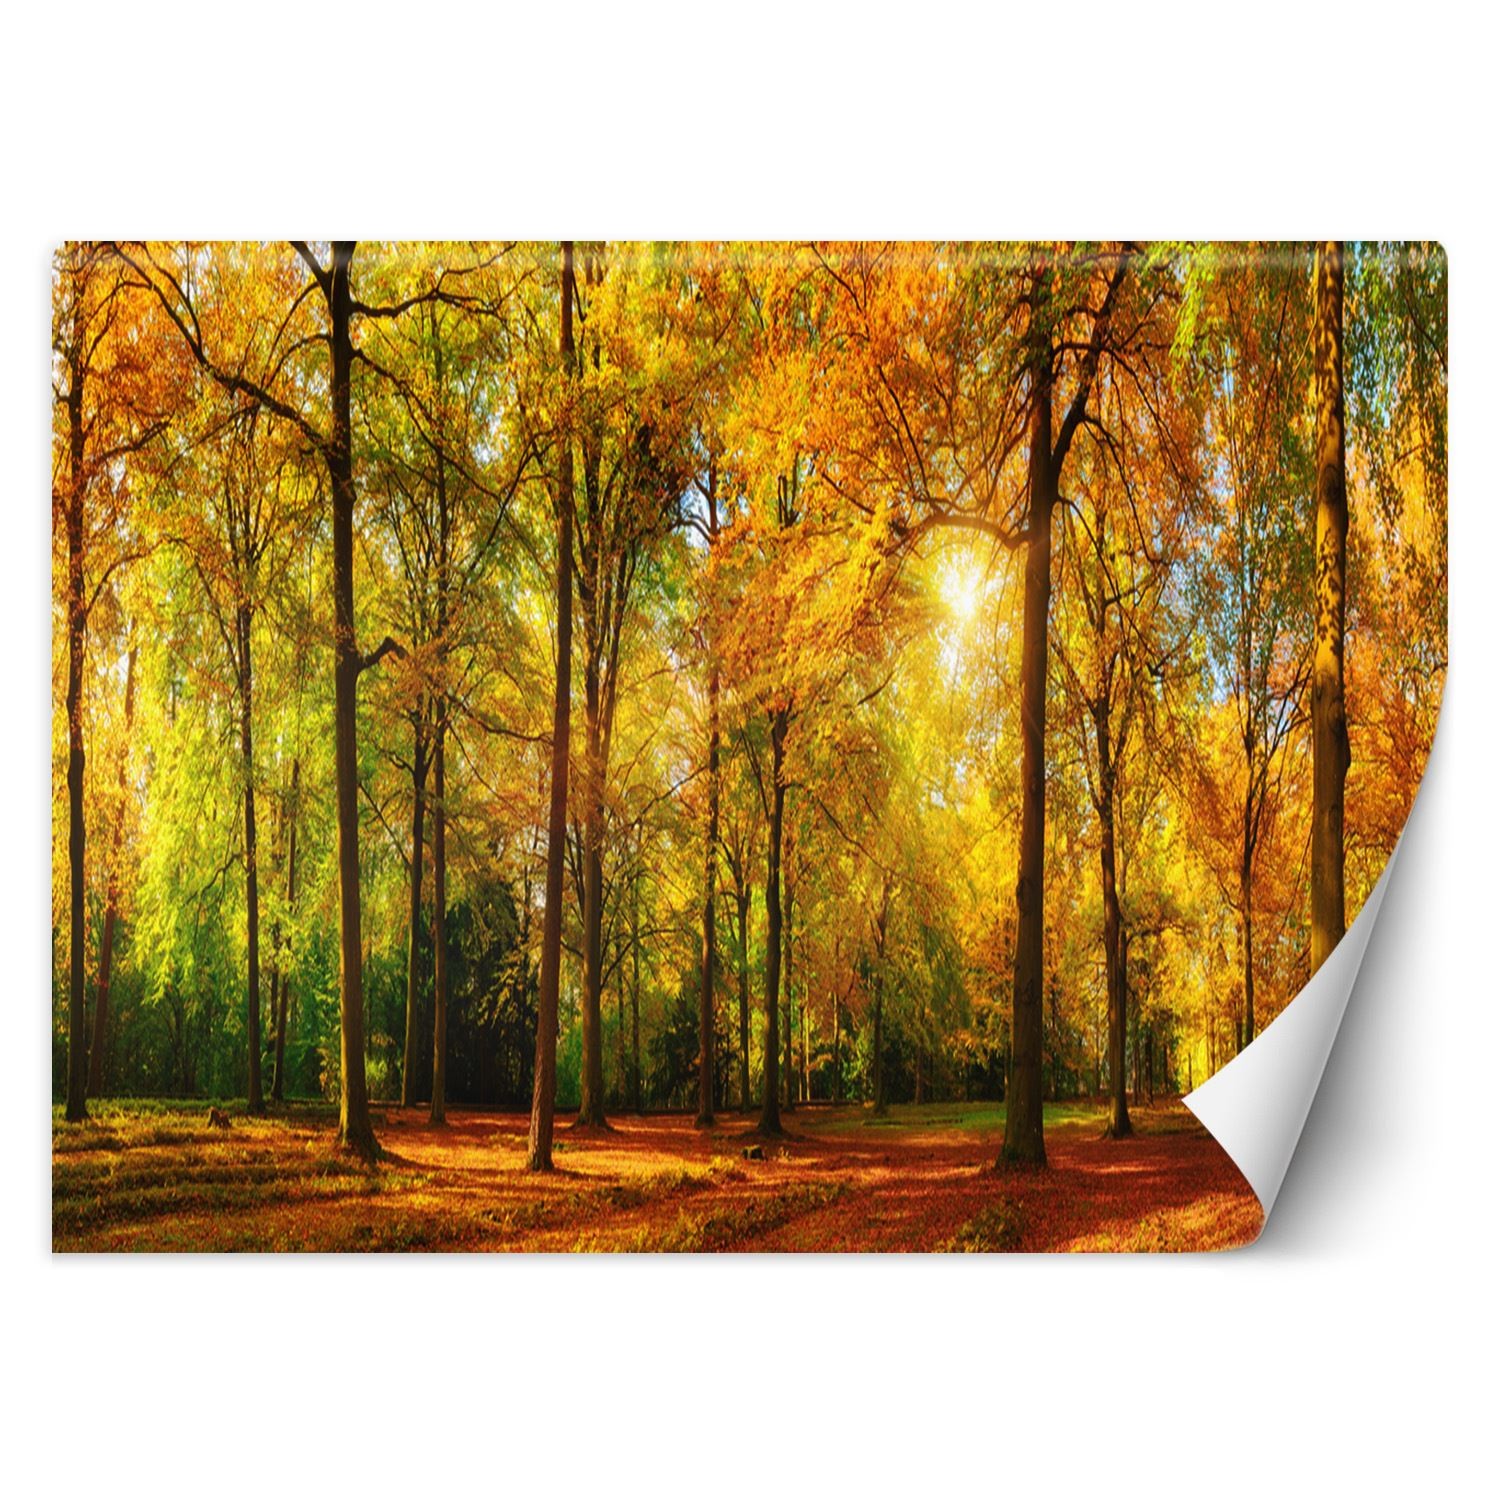 Trend24 – Behang – Herfstbos – Behangpapier – Fotobehang Natuur – Behang Woonkamer – 450x315x2 cm – Incl. behanglijm